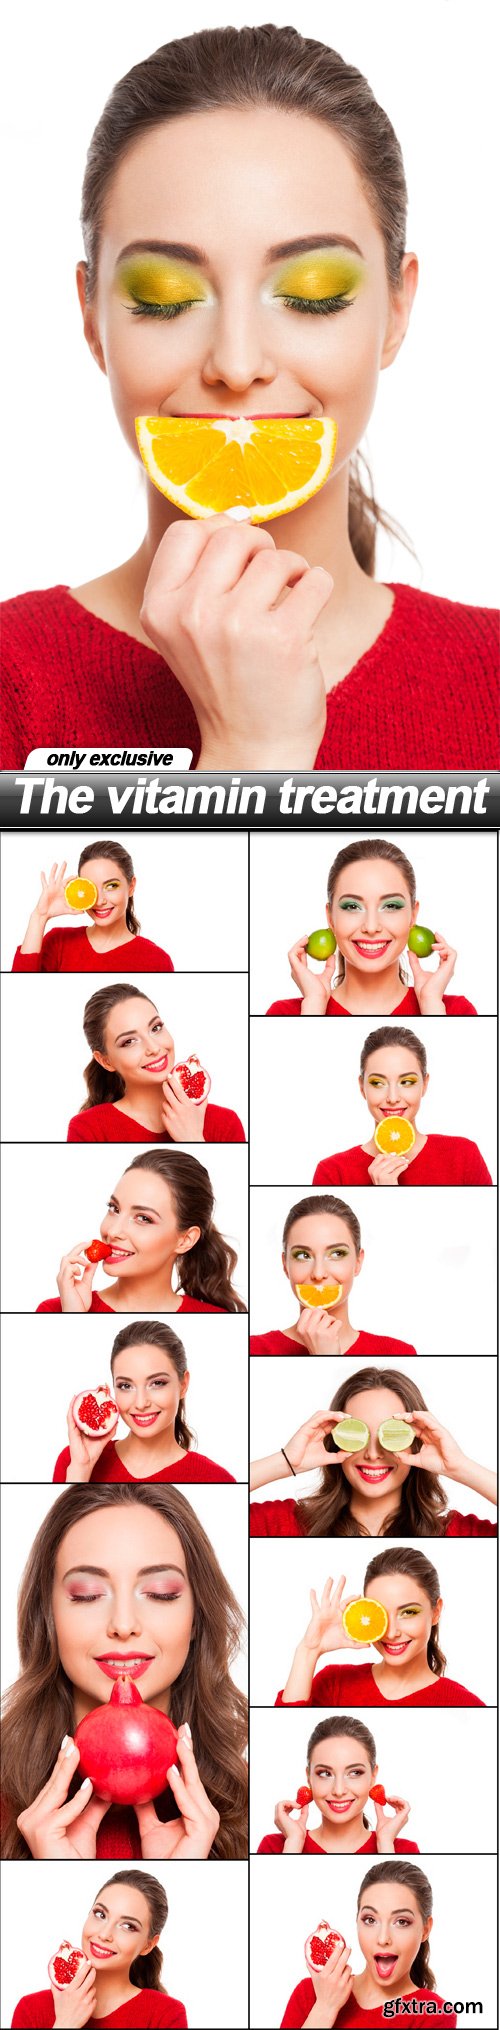 The vitamin treatment - 14 UHQ JPEG